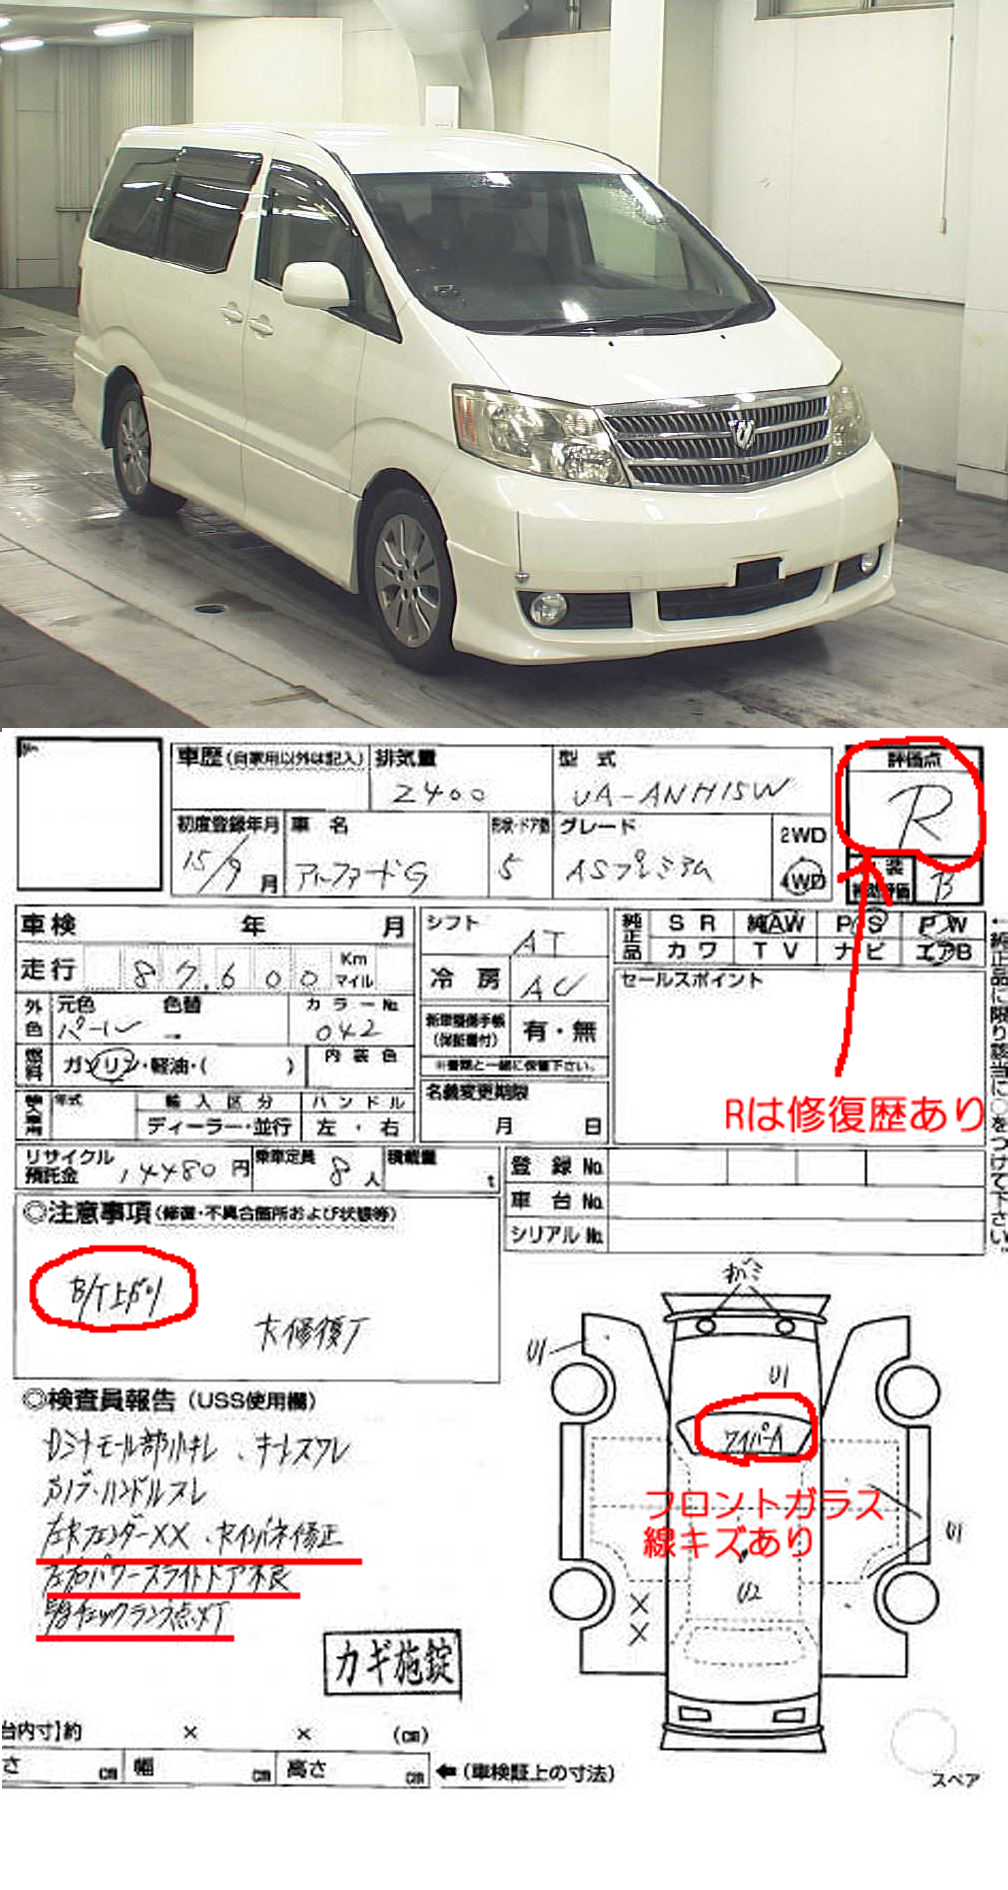 アルファードの中古車価格のからくりとは 埼玉にある中古車屋のプロが教えるミニバン選択基準